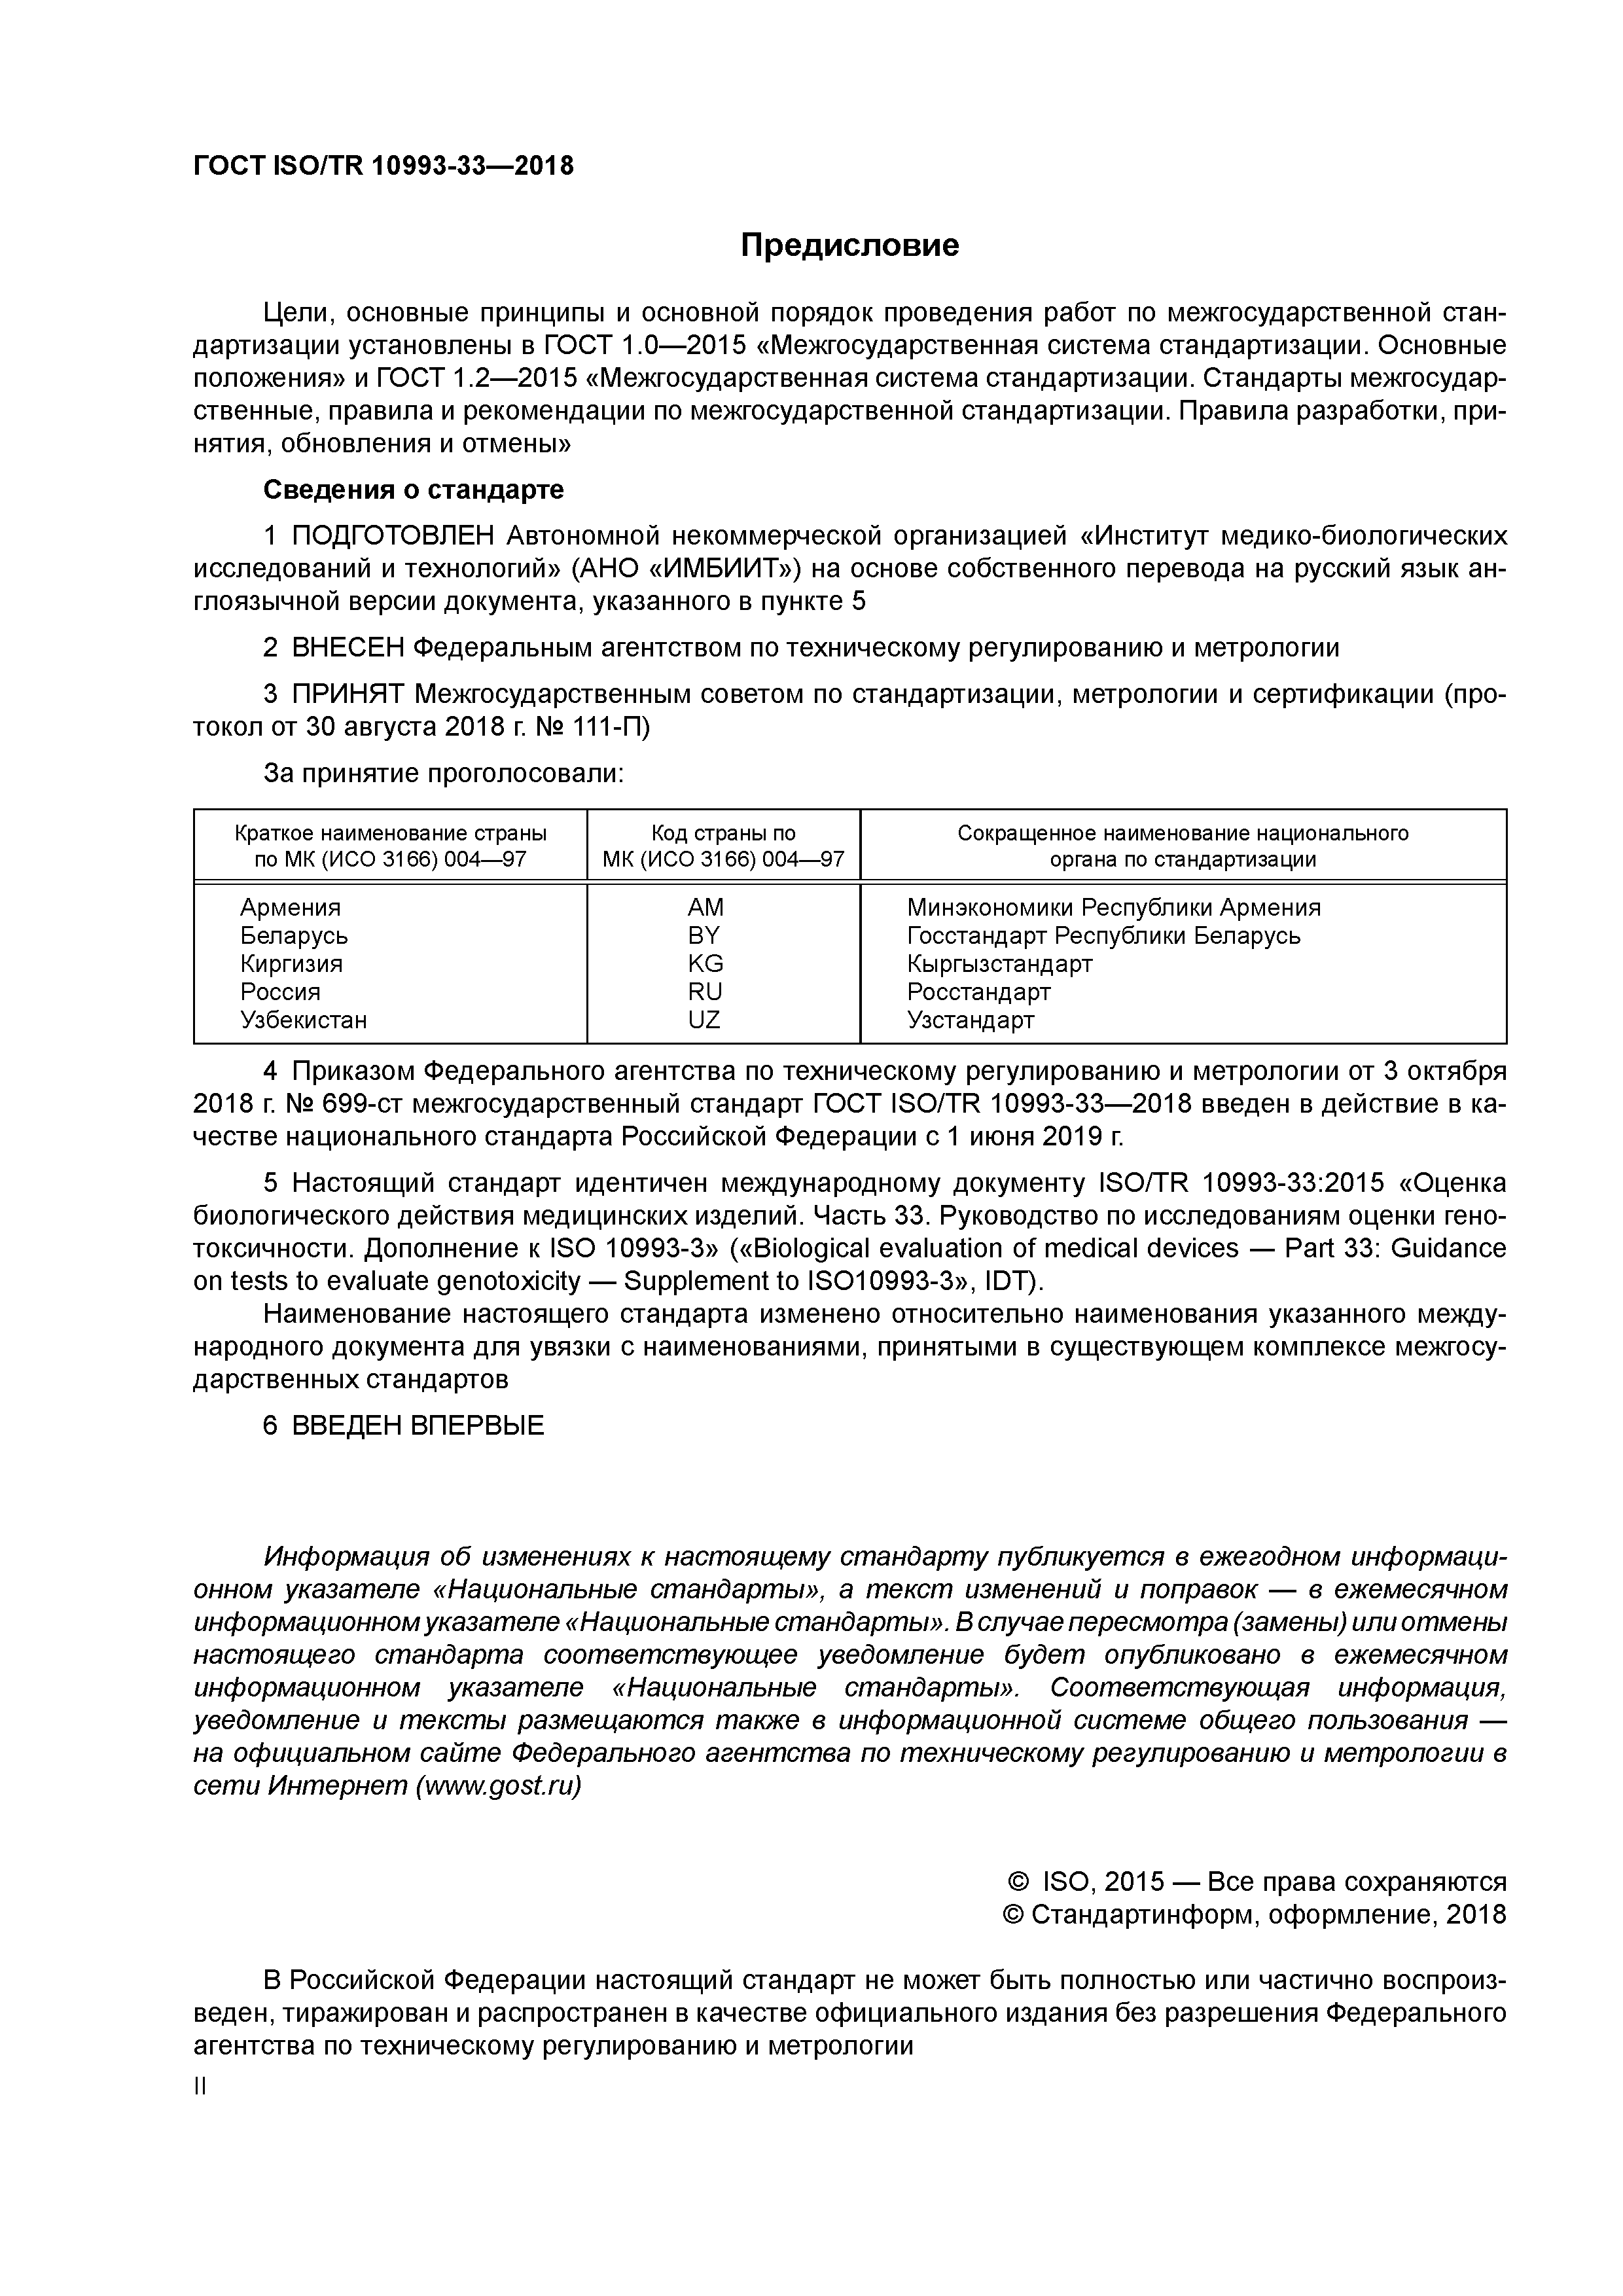 ГОСТ ISO/TR 10993-33-2018